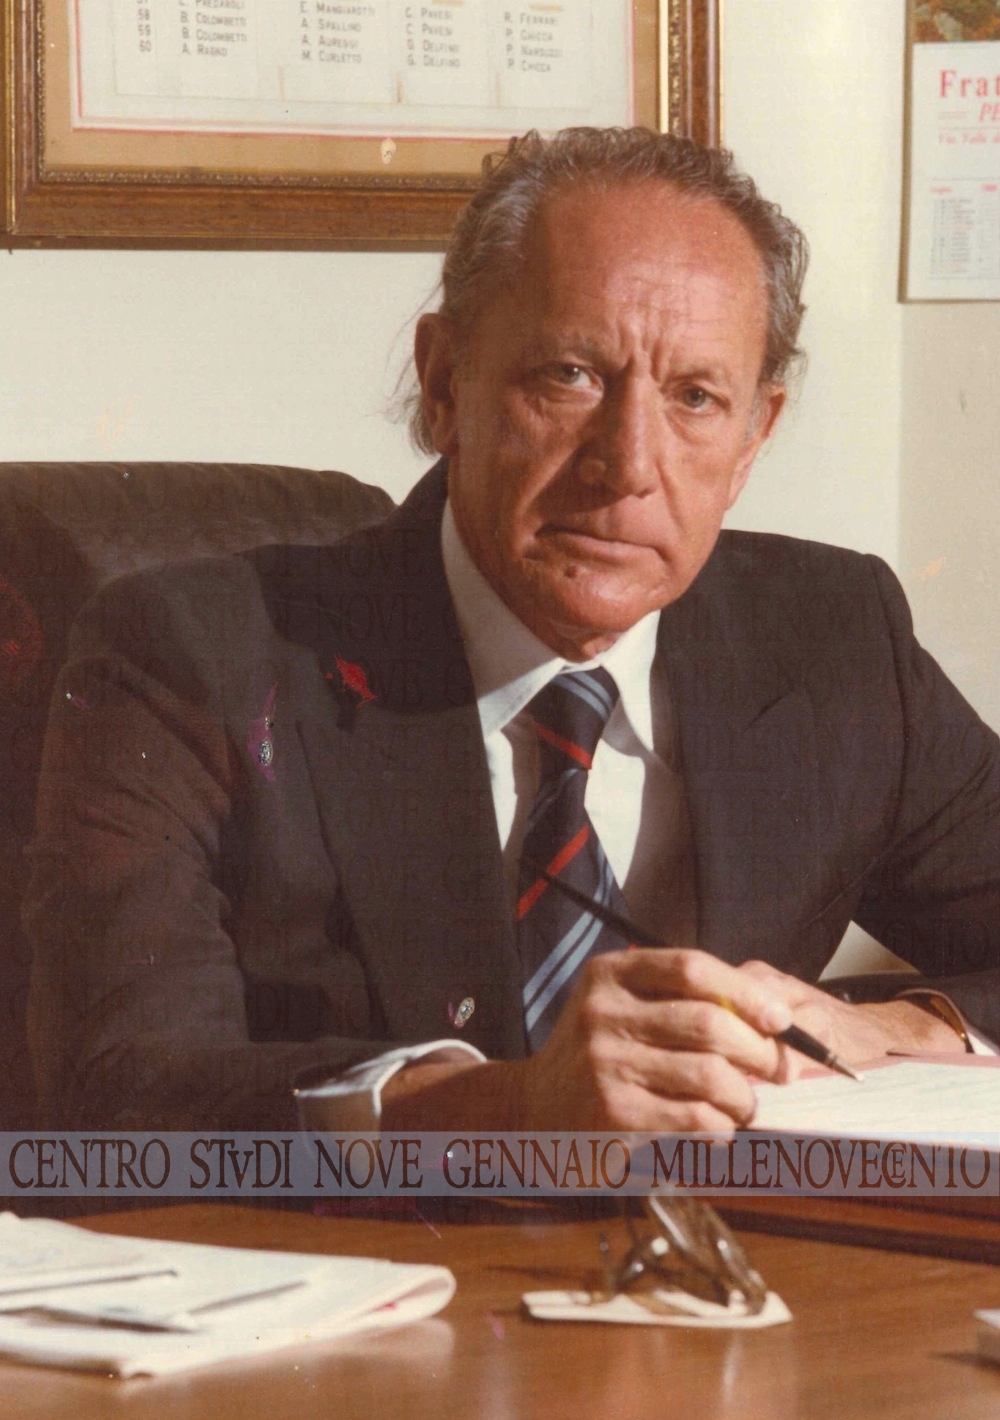 Cento anni fa nasceva Renzo Nostini